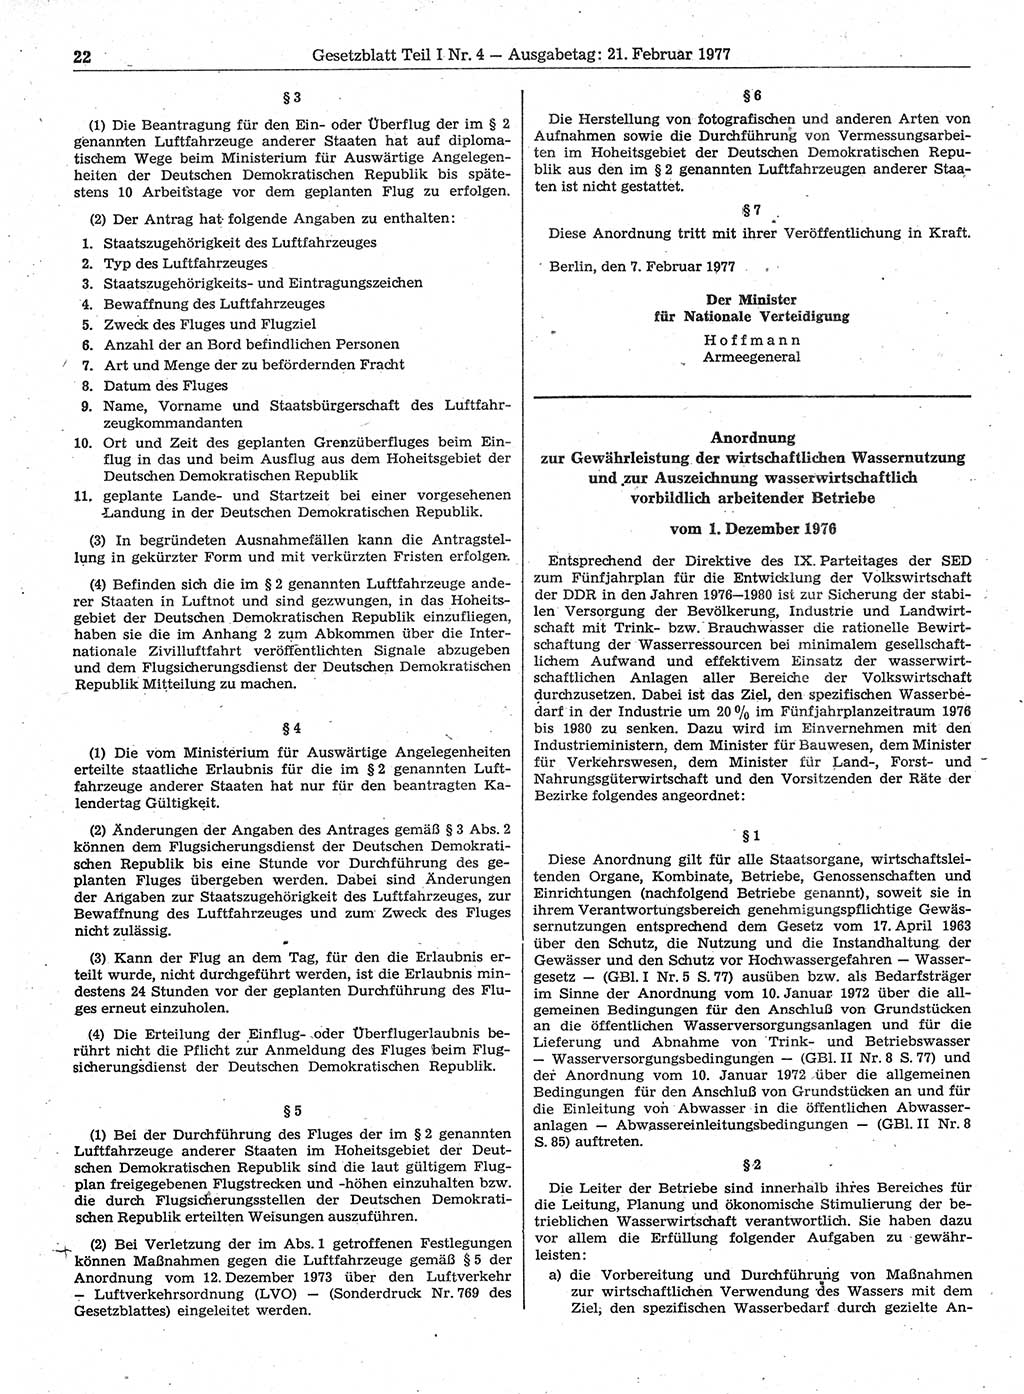 Gesetzblatt (GBl.) der Deutschen Demokratischen Republik (DDR) Teil Ⅰ 1977, Seite 22 (GBl. DDR Ⅰ 1977, S. 22)